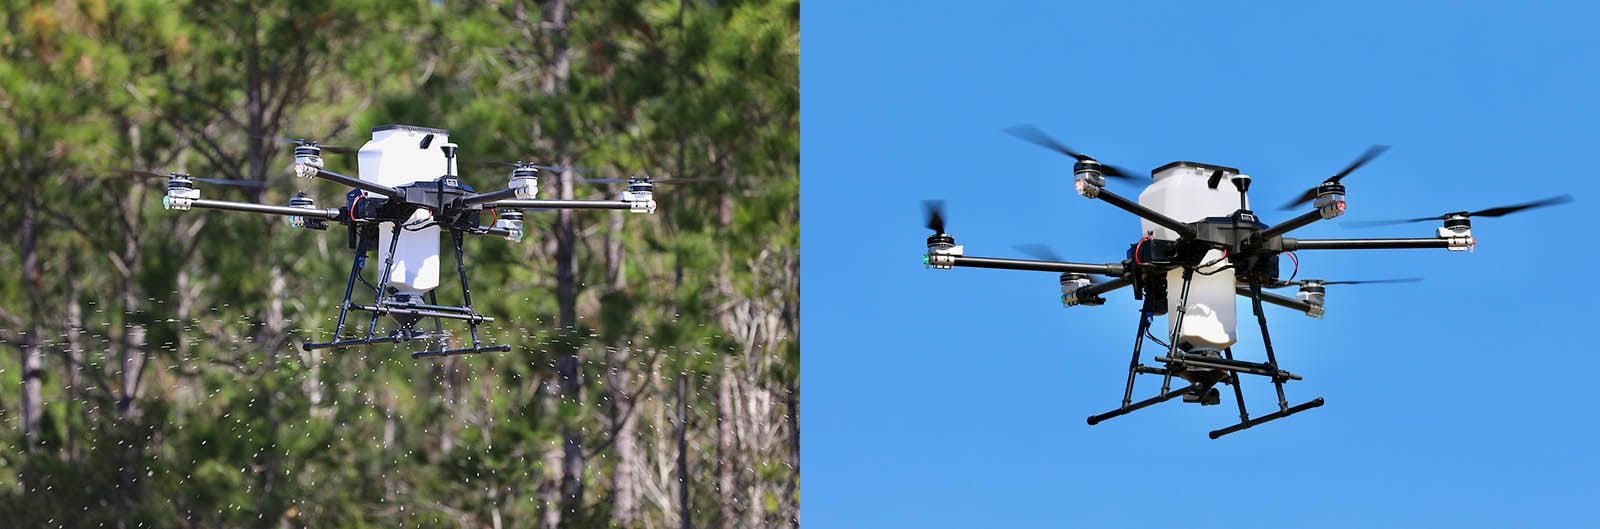 precisionvision 40 x drone